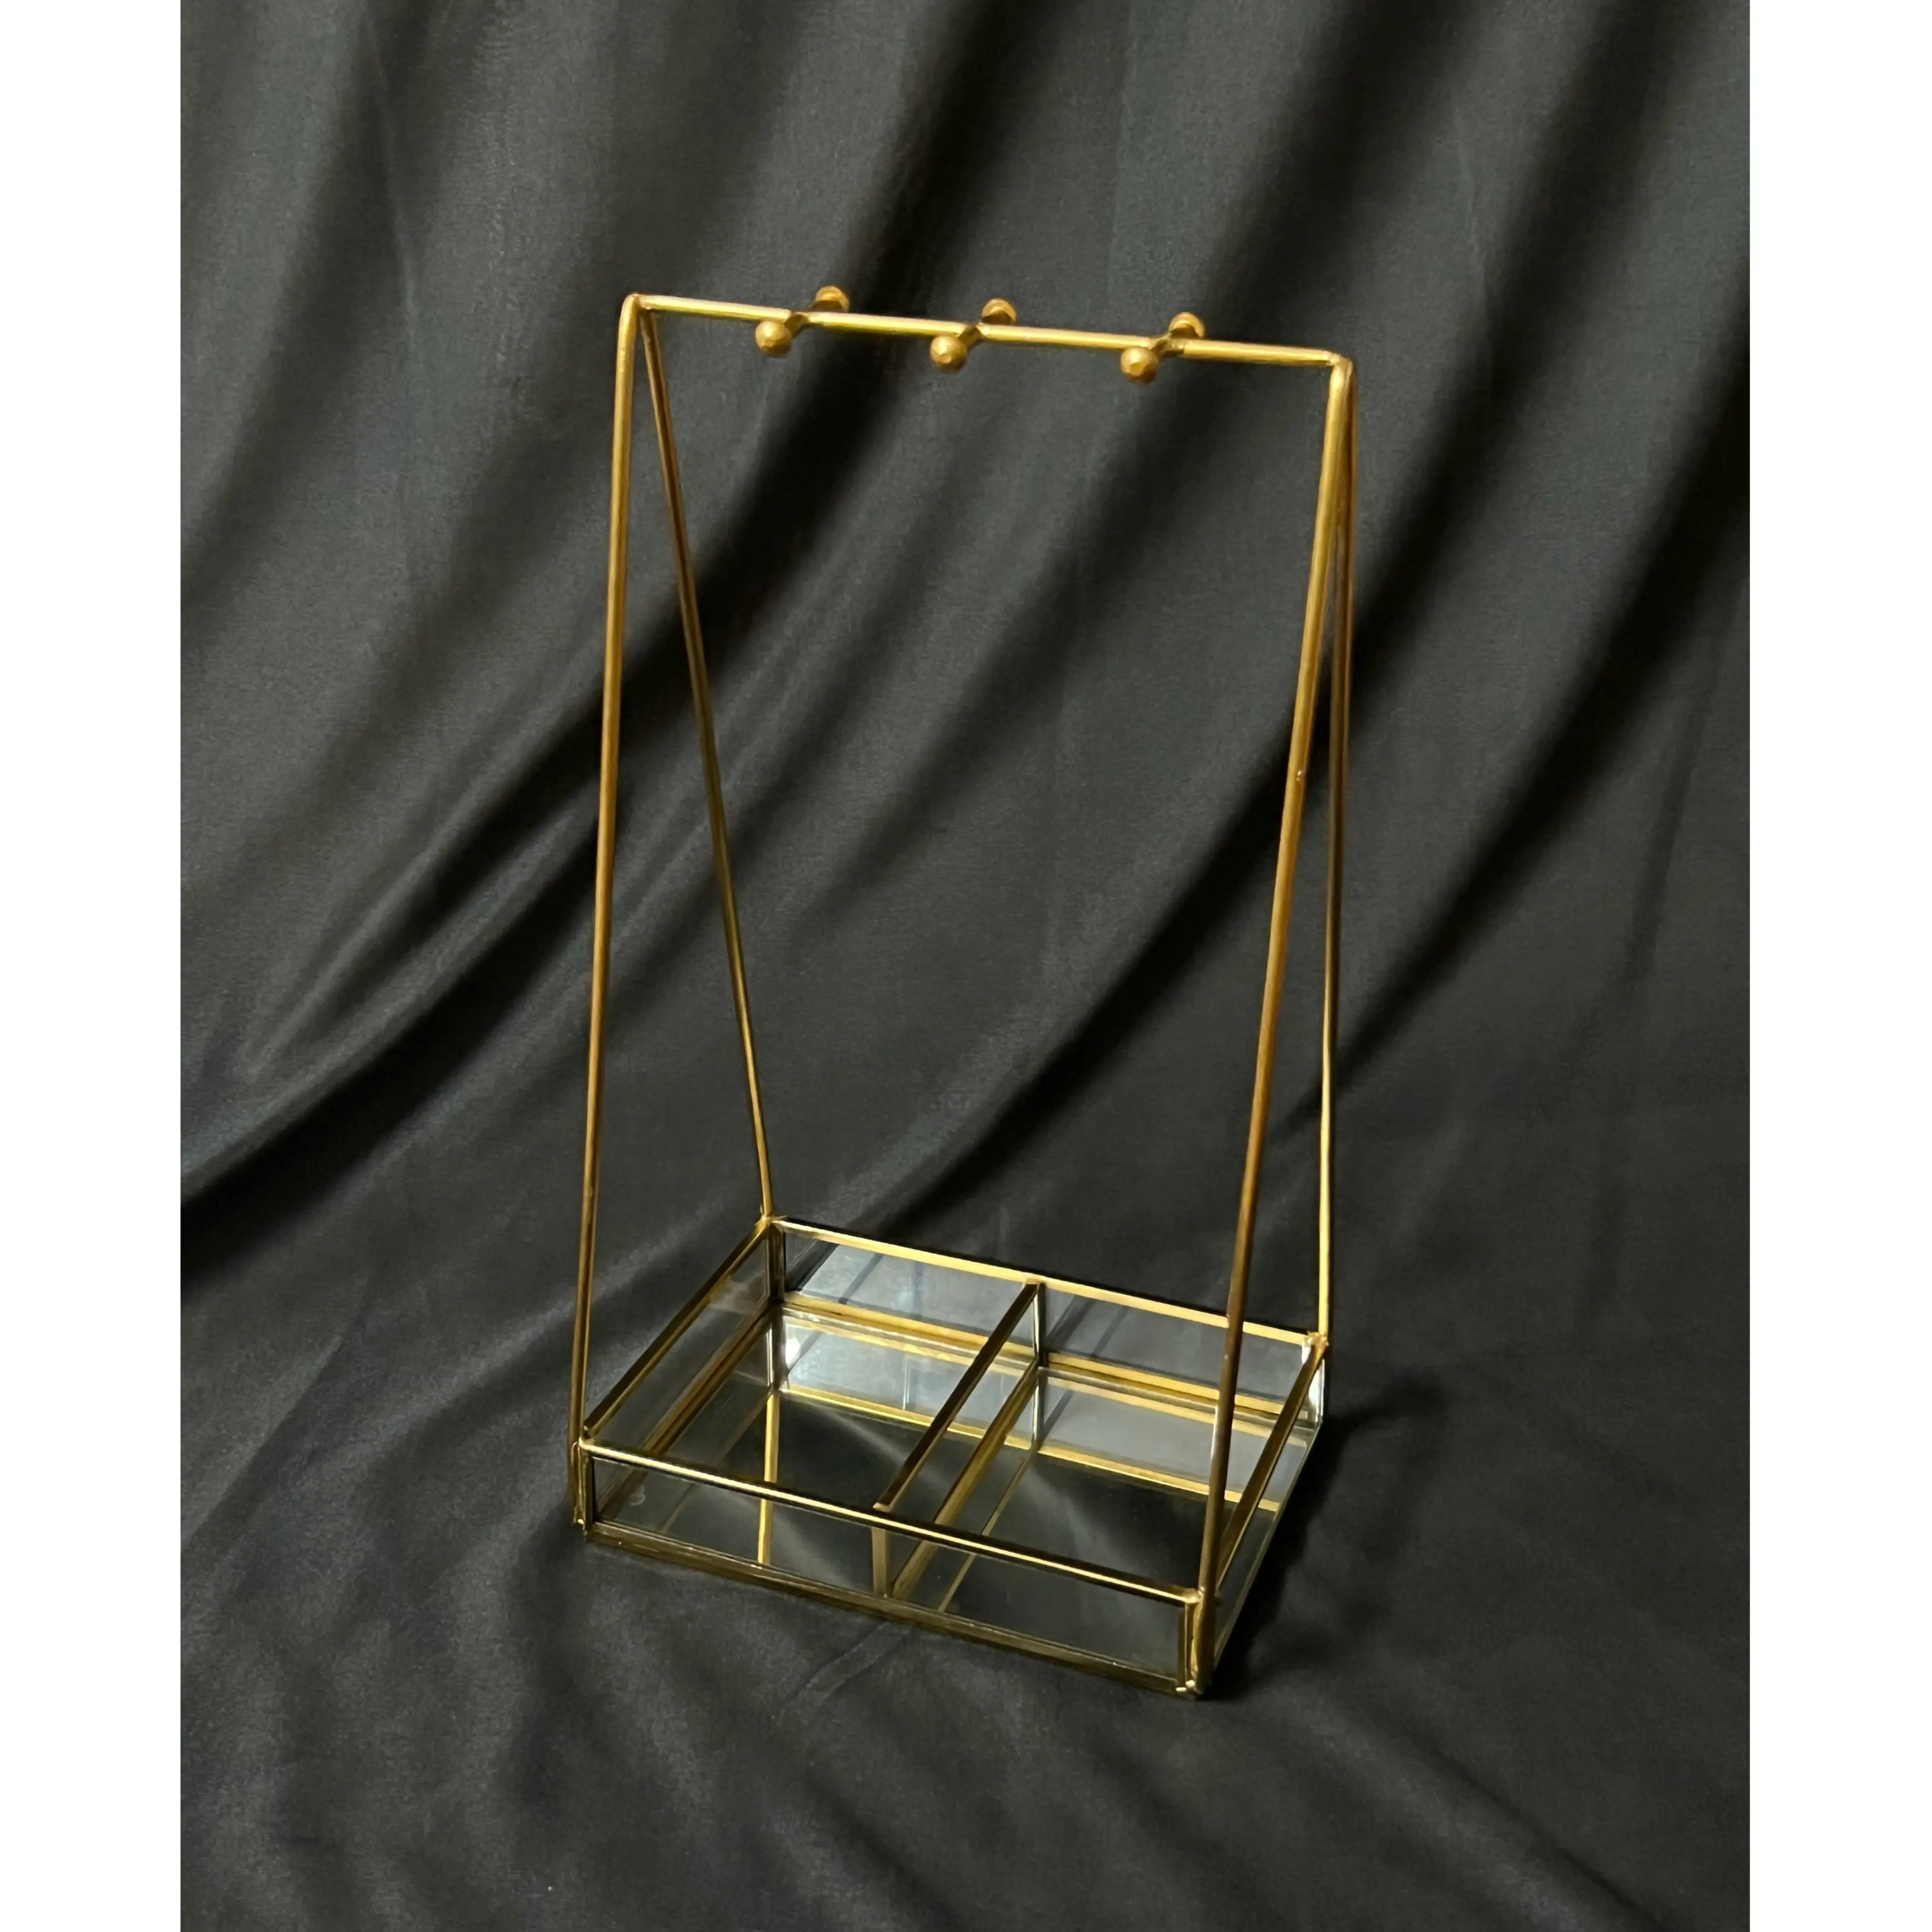 Sıcak satış Metal takı organizatör standı ile cam tepsi için altın Muti amaçlı kullanım yapmak ve takı öğeleri tutucu kadınlar için